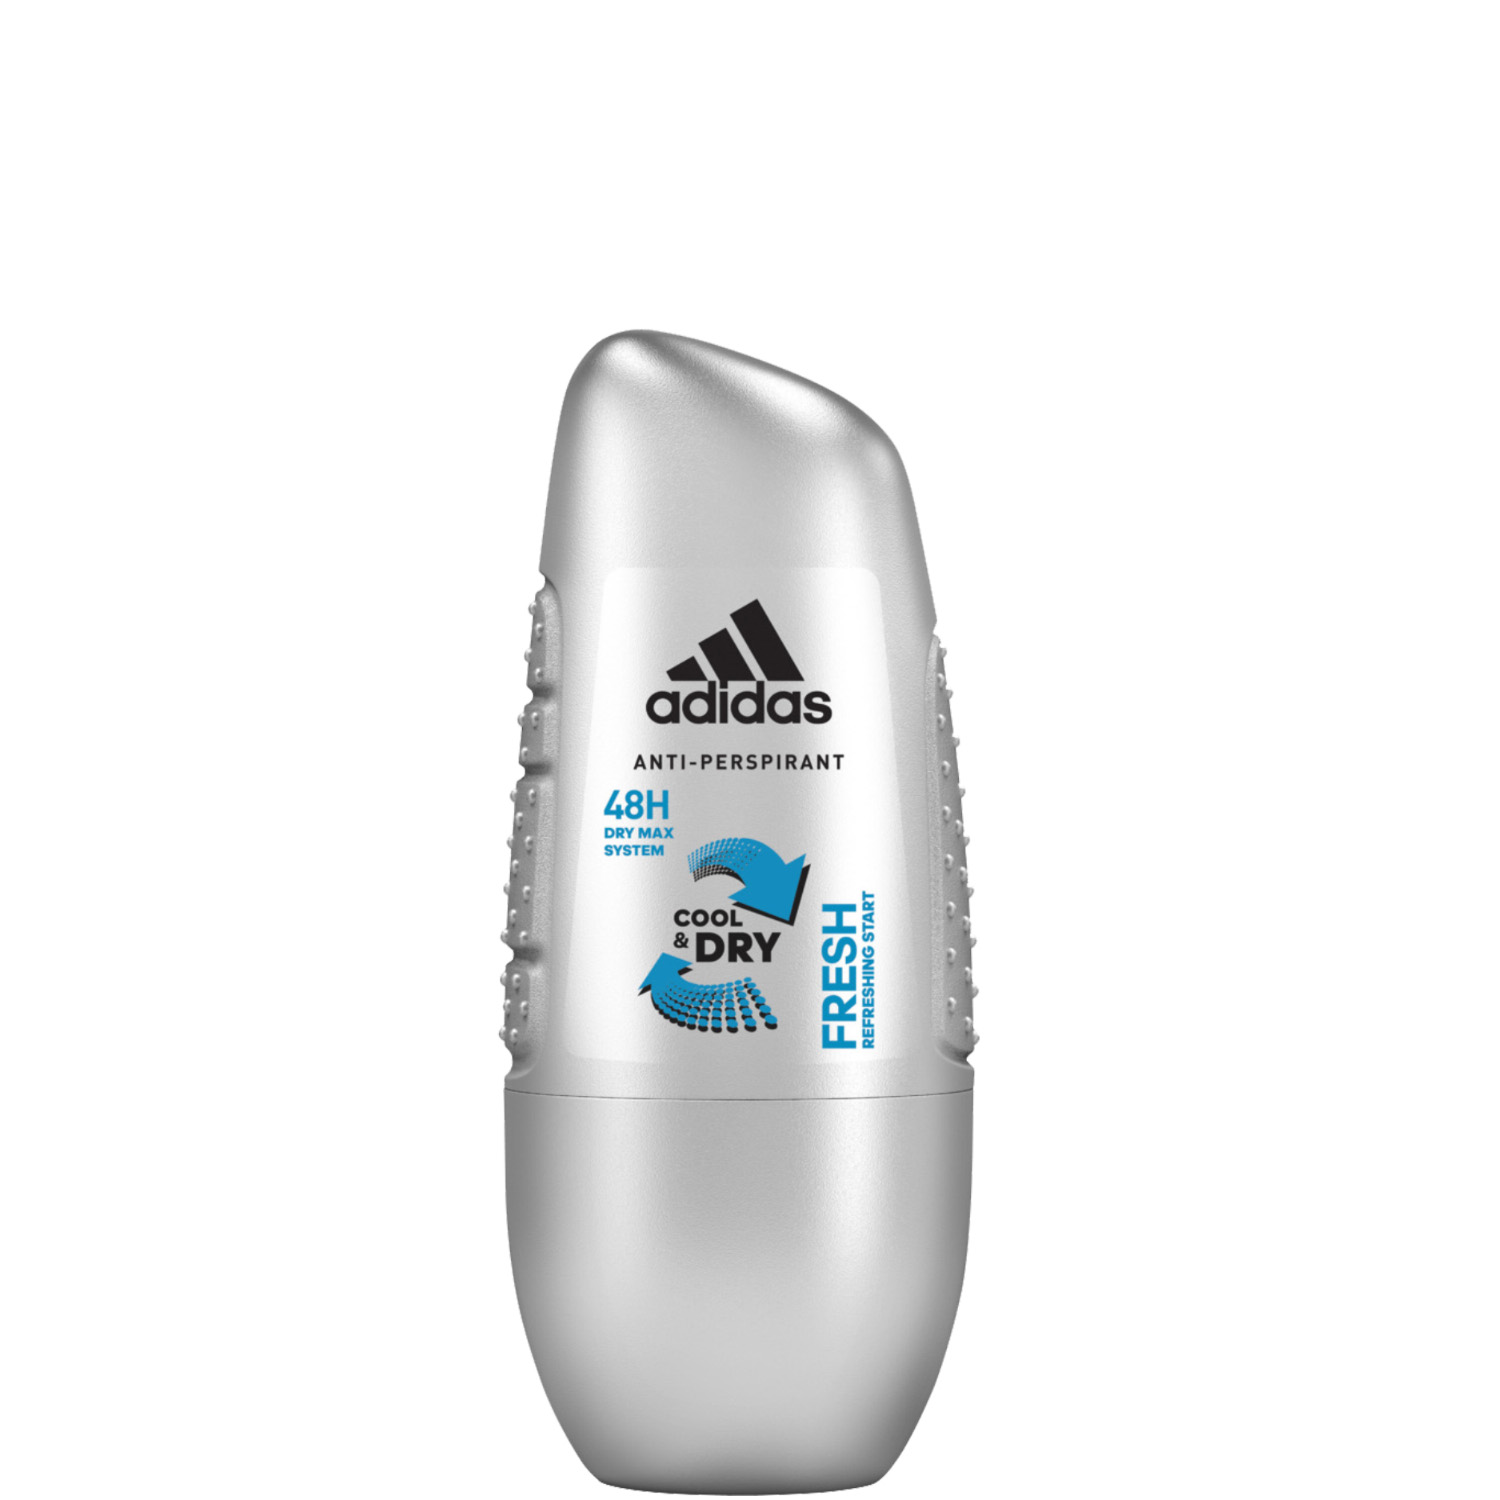 Adidas Fresh Cool & Dry 48H Deodorant Roll-On 50ml